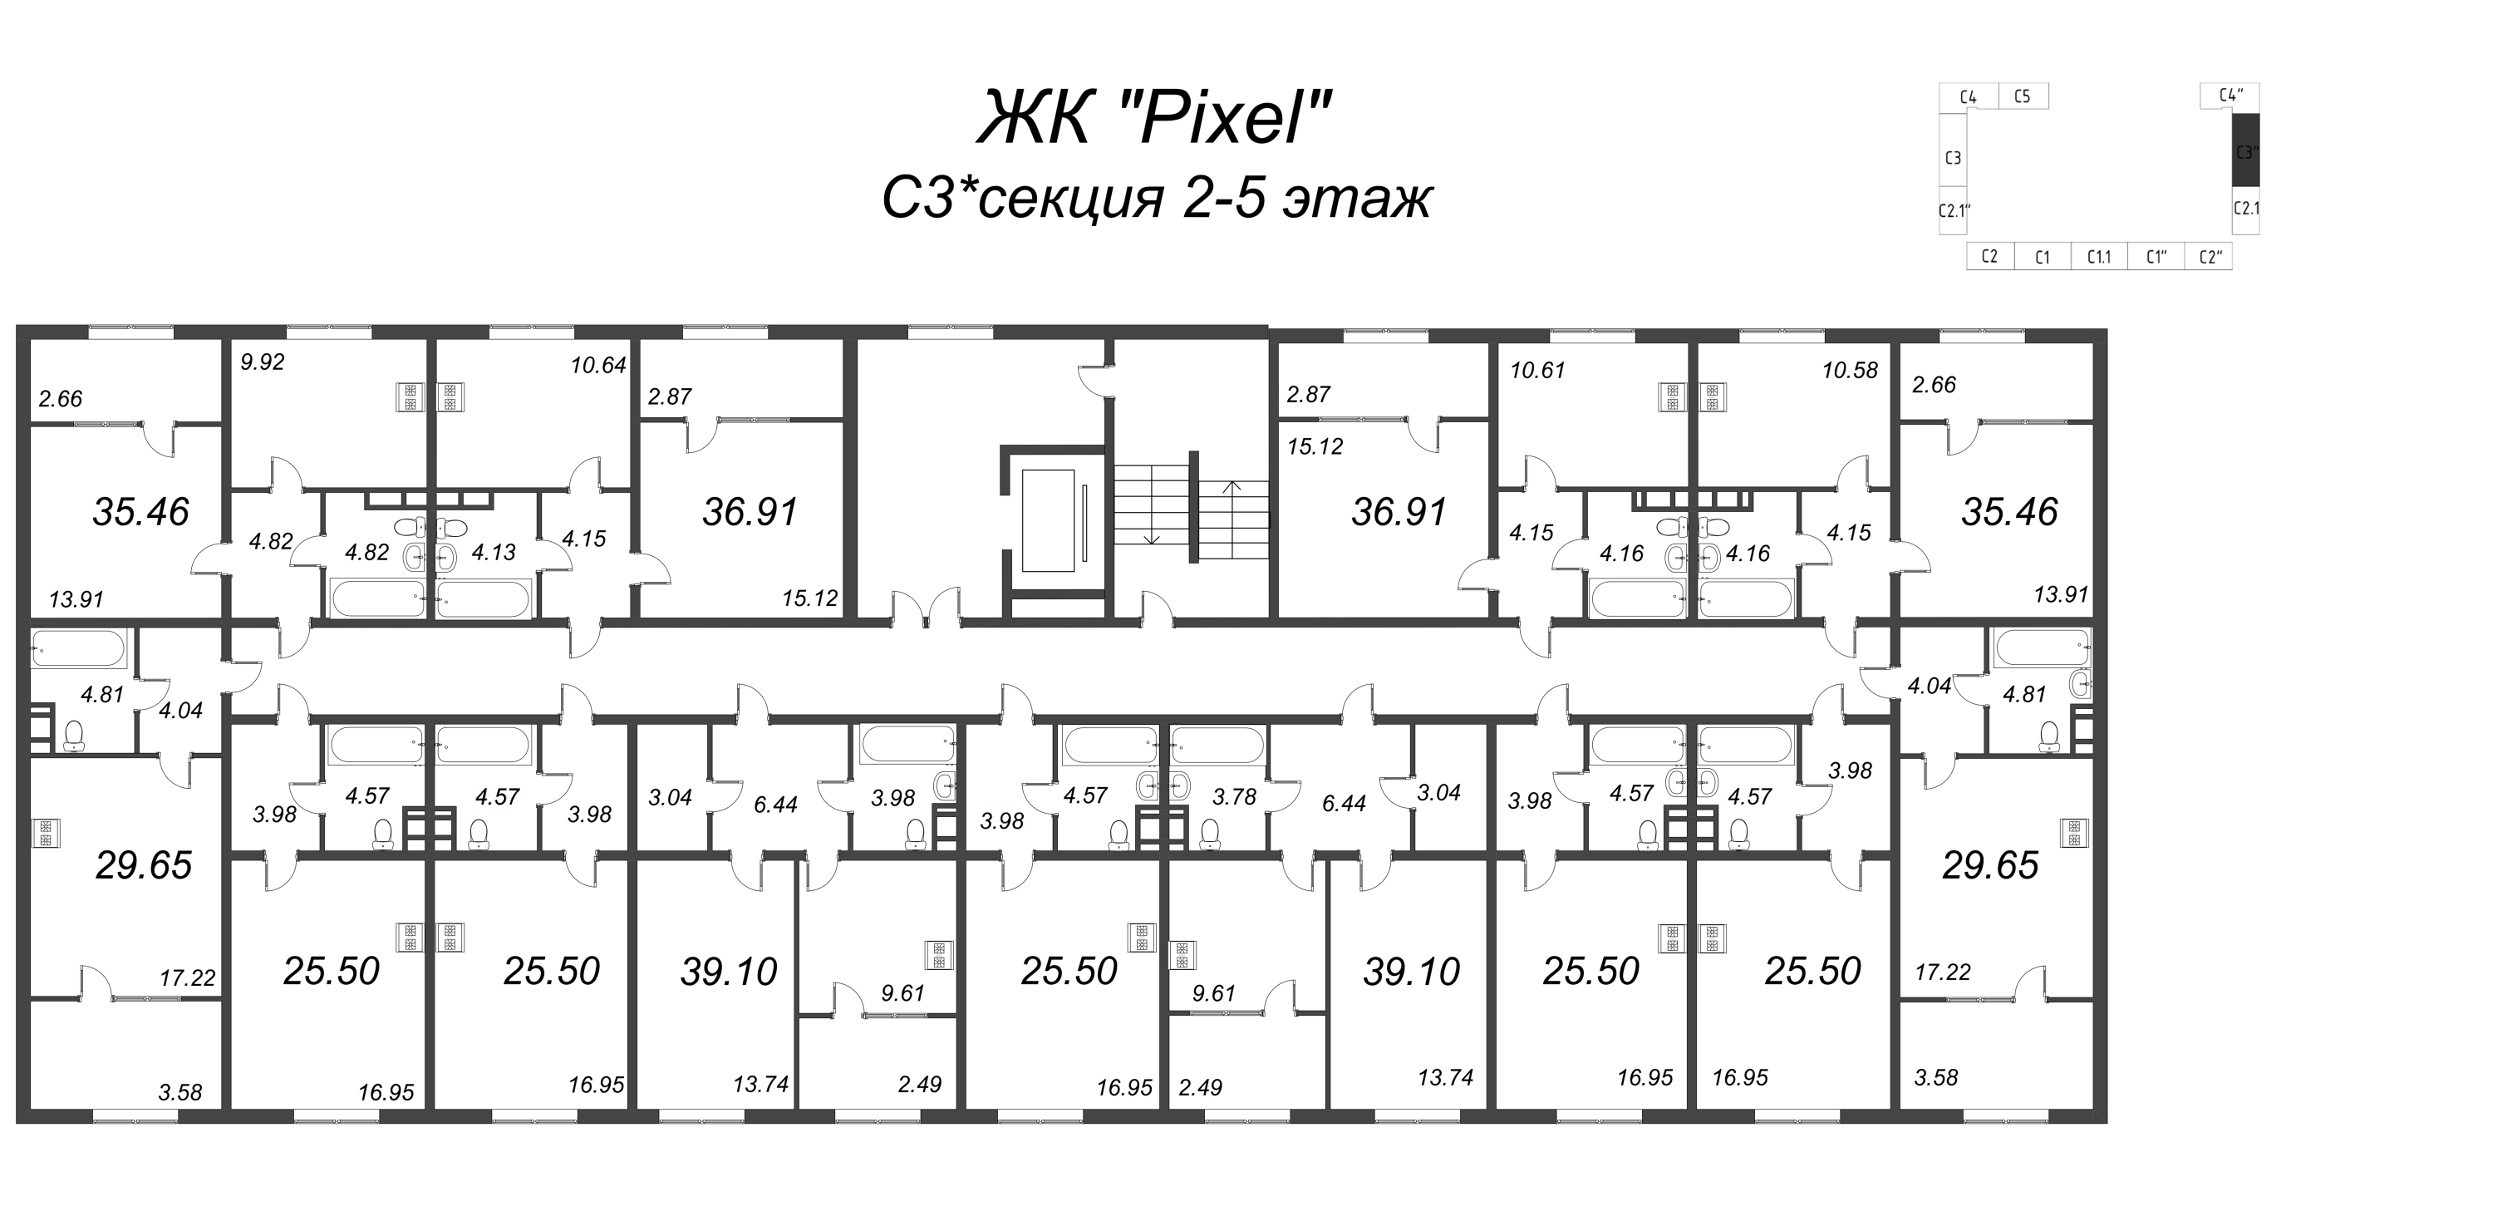 1-комнатная квартира, 38.09 м² в ЖК "Pixel" - планировка этажа